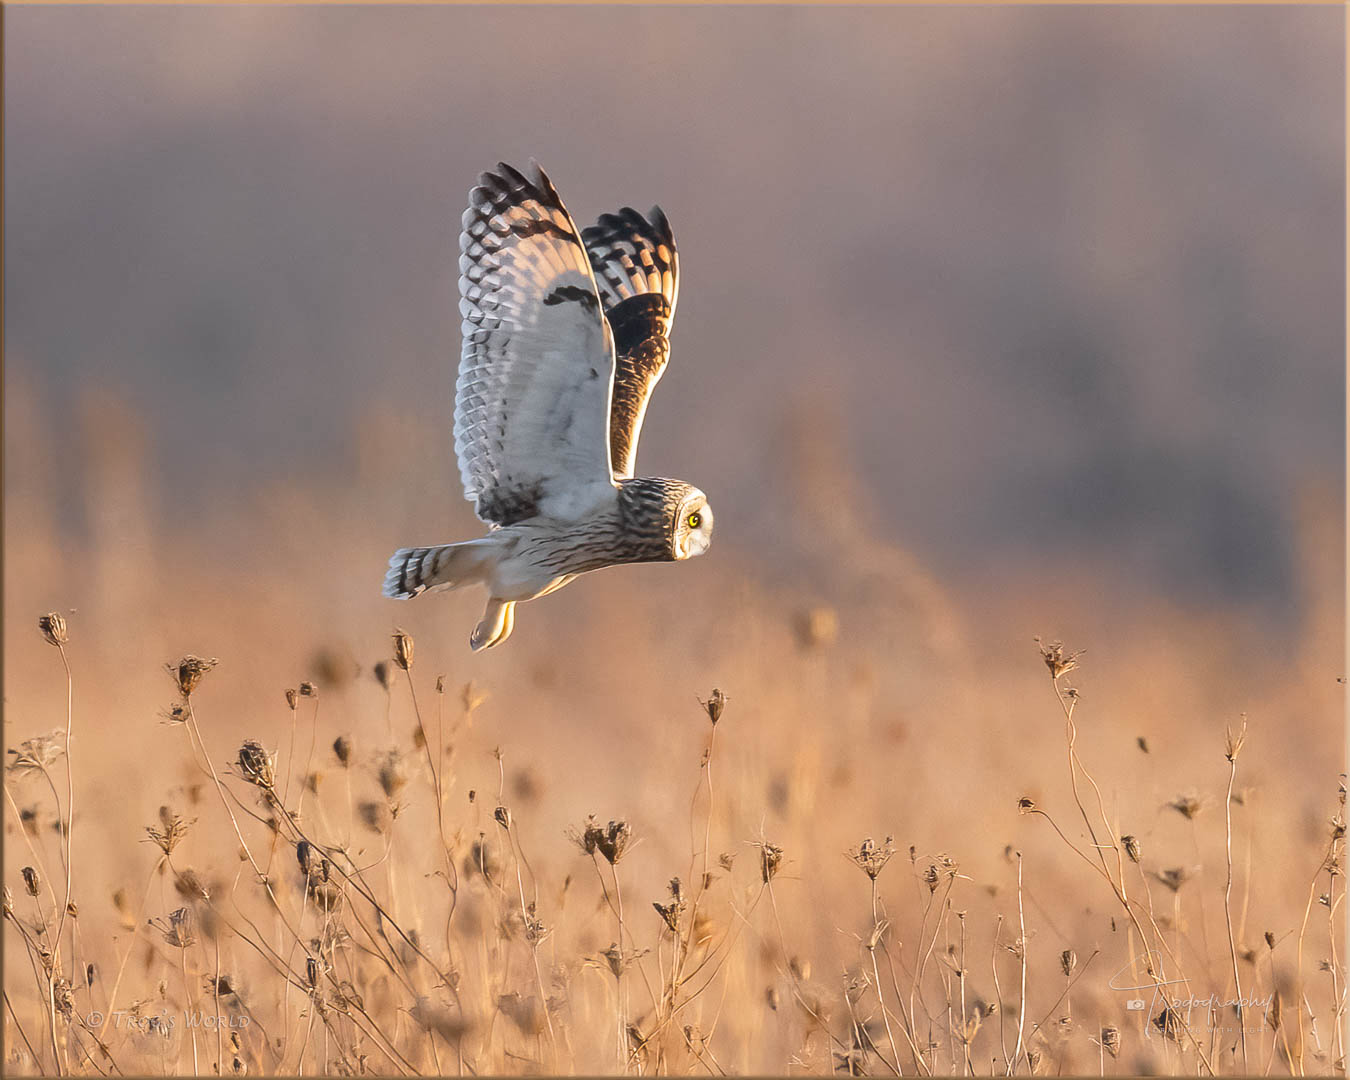 Short-eared owl on an evening flight over the prairie